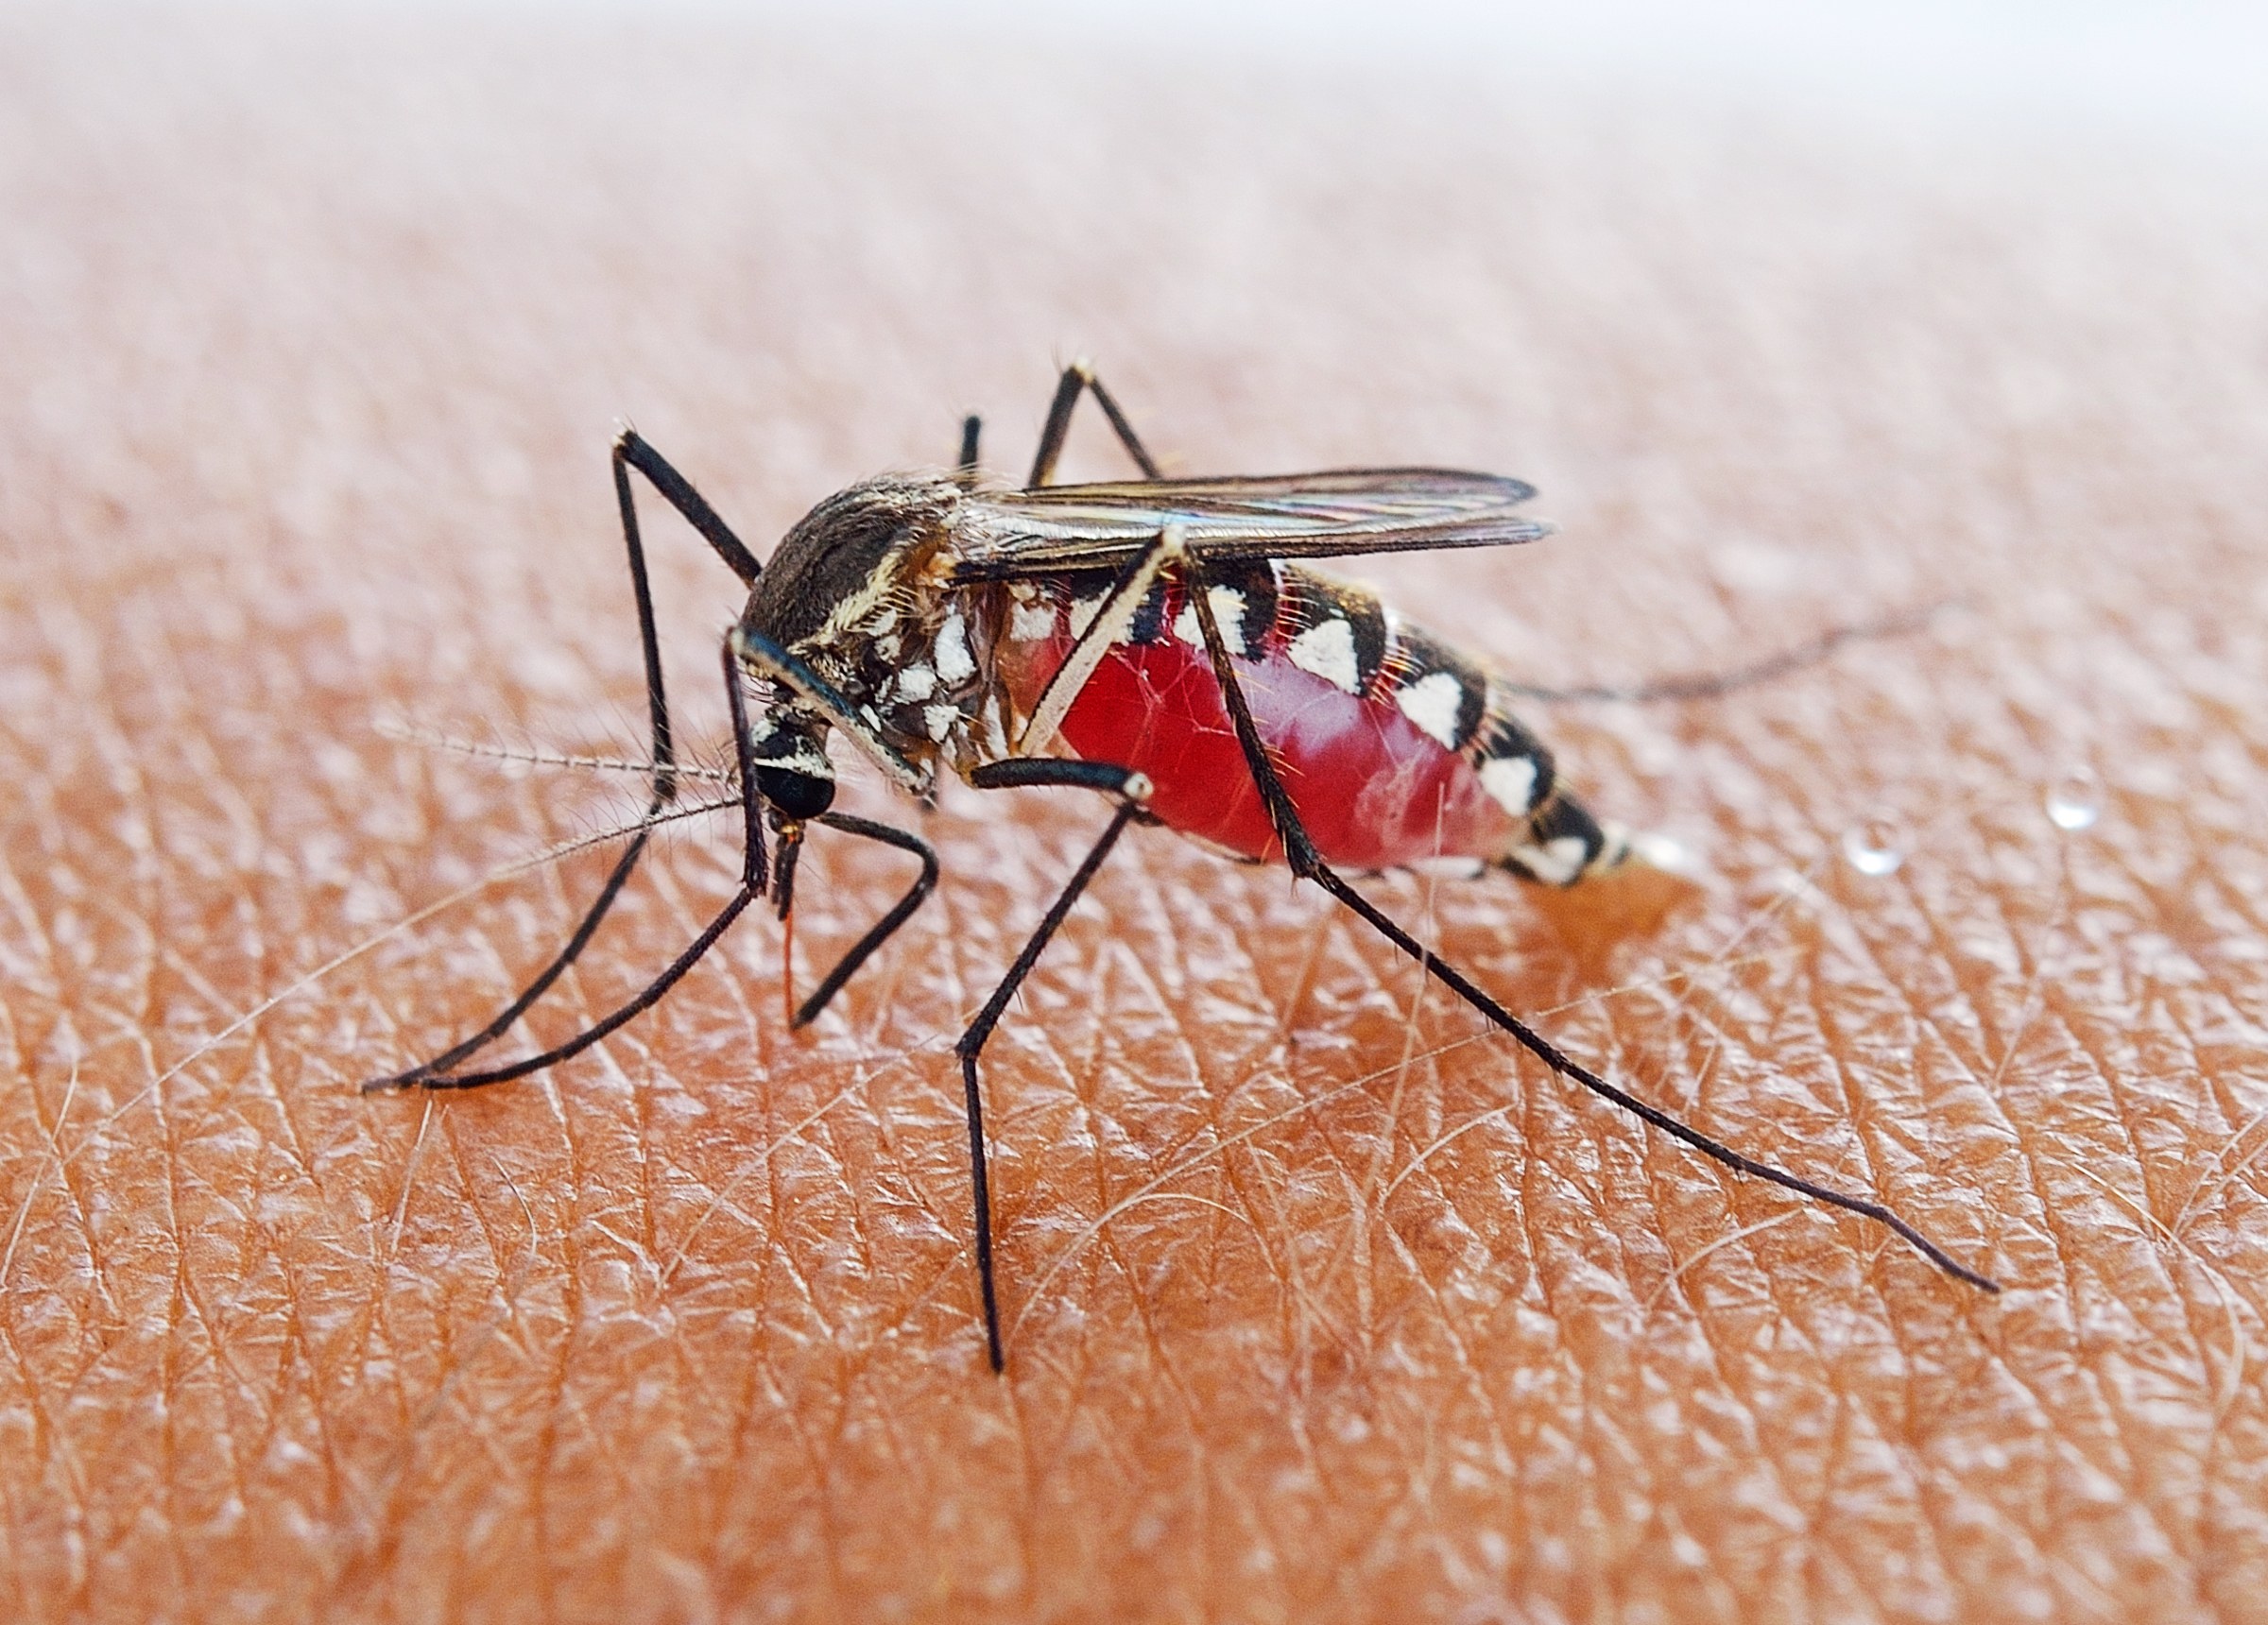 Malaria spreading mosquito species found in Sri Lanka